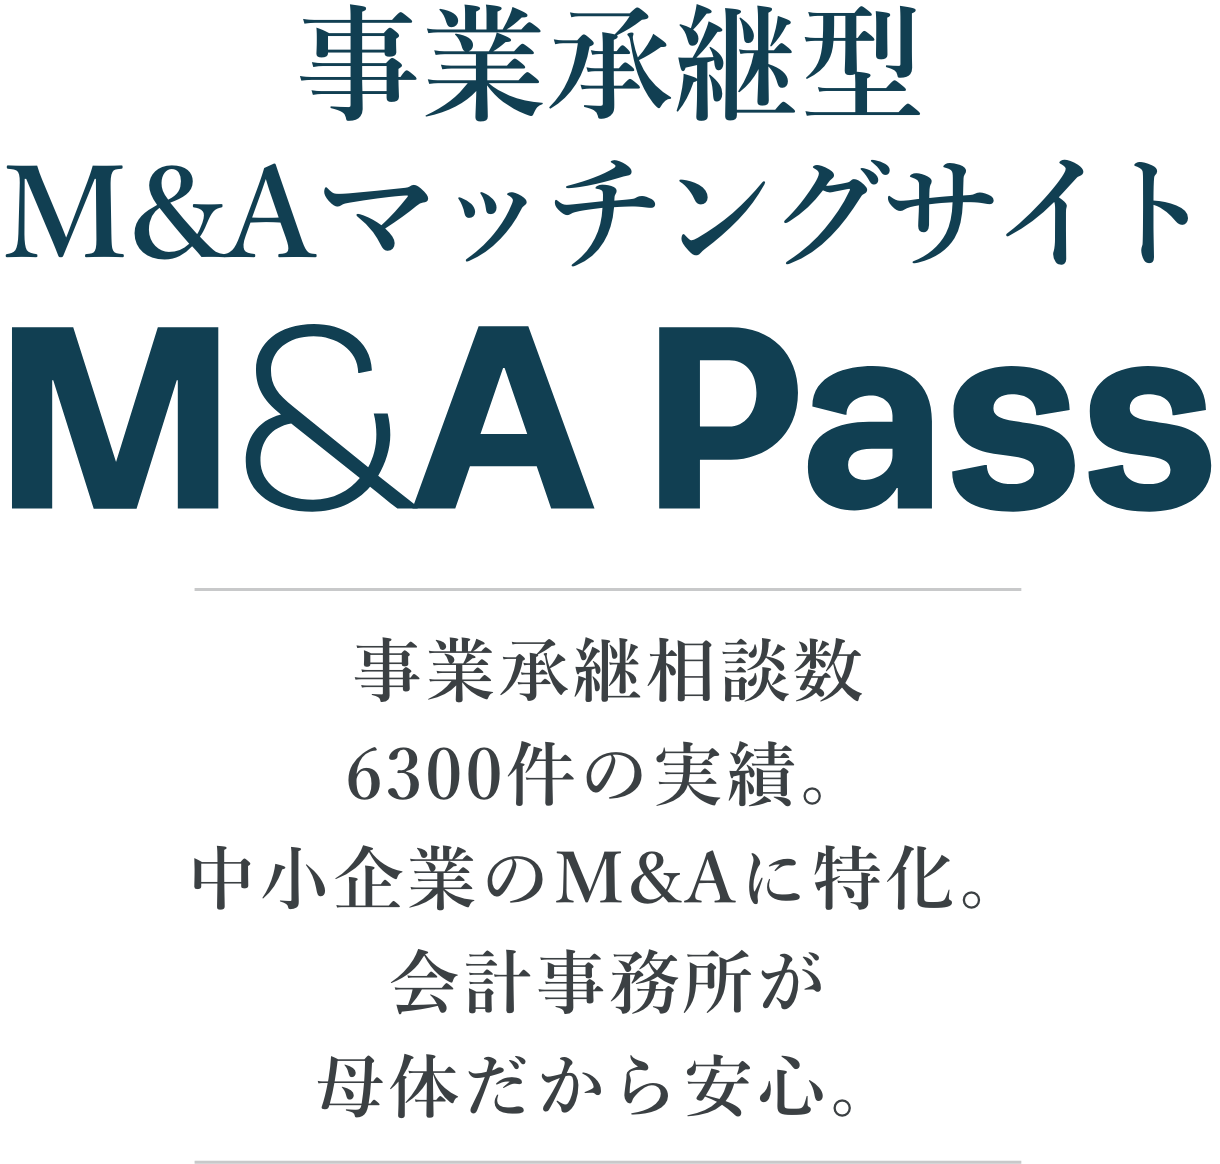 事業継承型M&Aマッチングサイト M&A Pass 事業継承装弾数6300件の実績。中小企業のM&Aに特化。会計事務所が母体だから安心